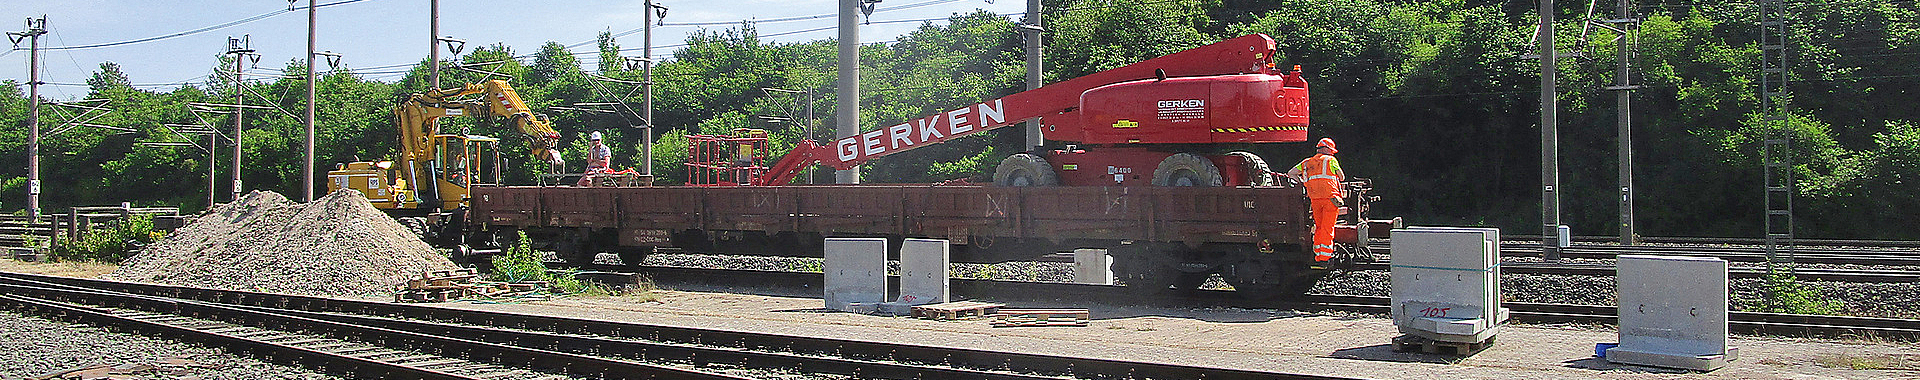 Zwei Bauarbeiter auf einem Güterwagen in einer Gleisbaustelle.